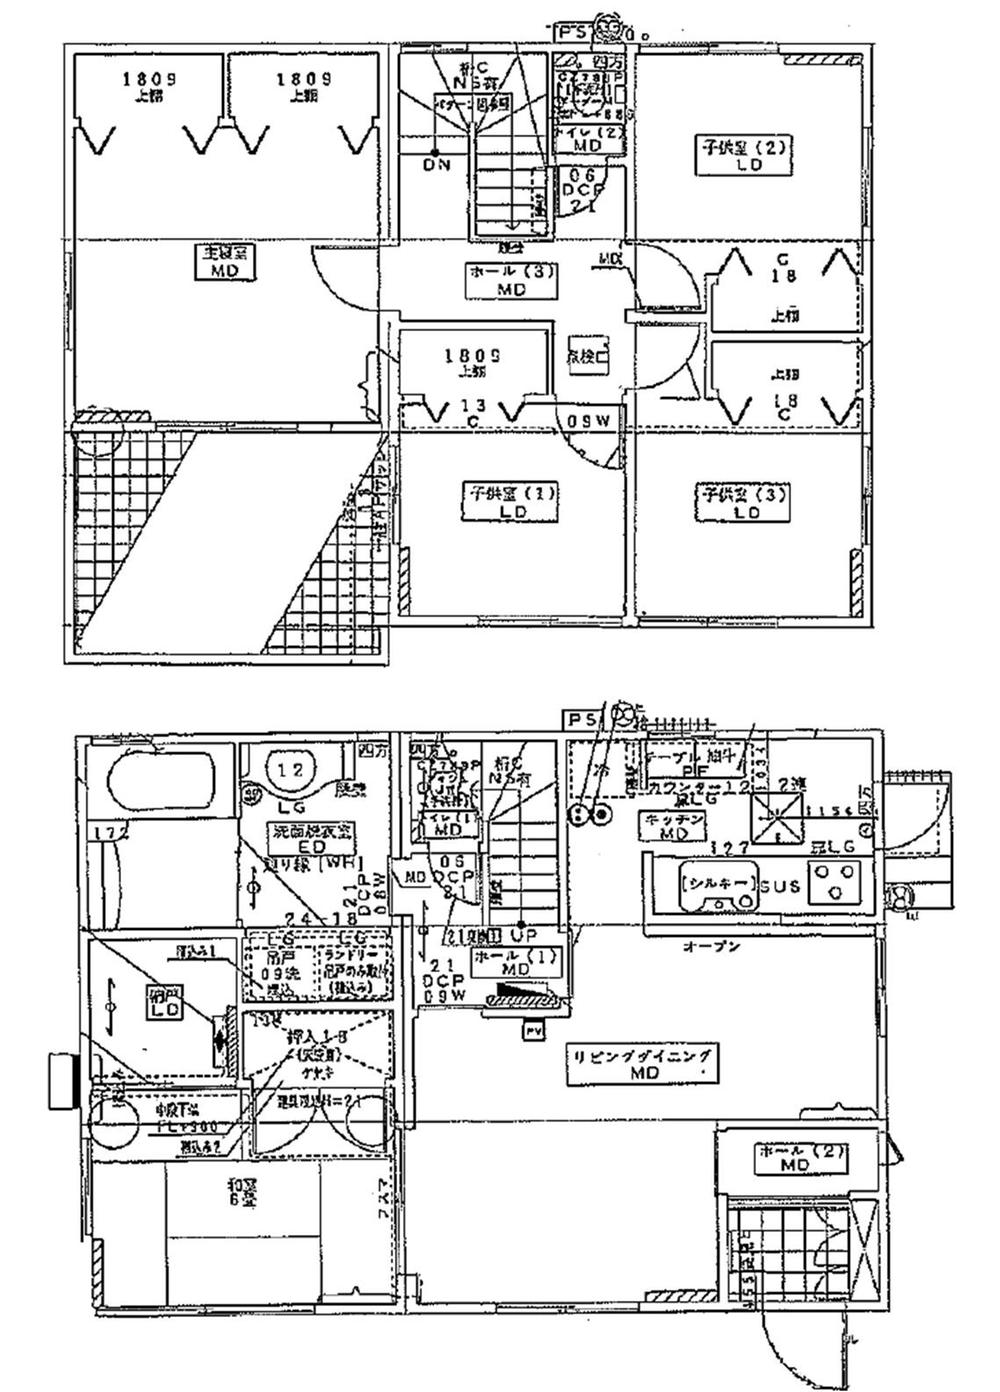 Floor plan. 23 million yen, 5LDK, Land area 230.23 sq m , Building area 118.1 sq m